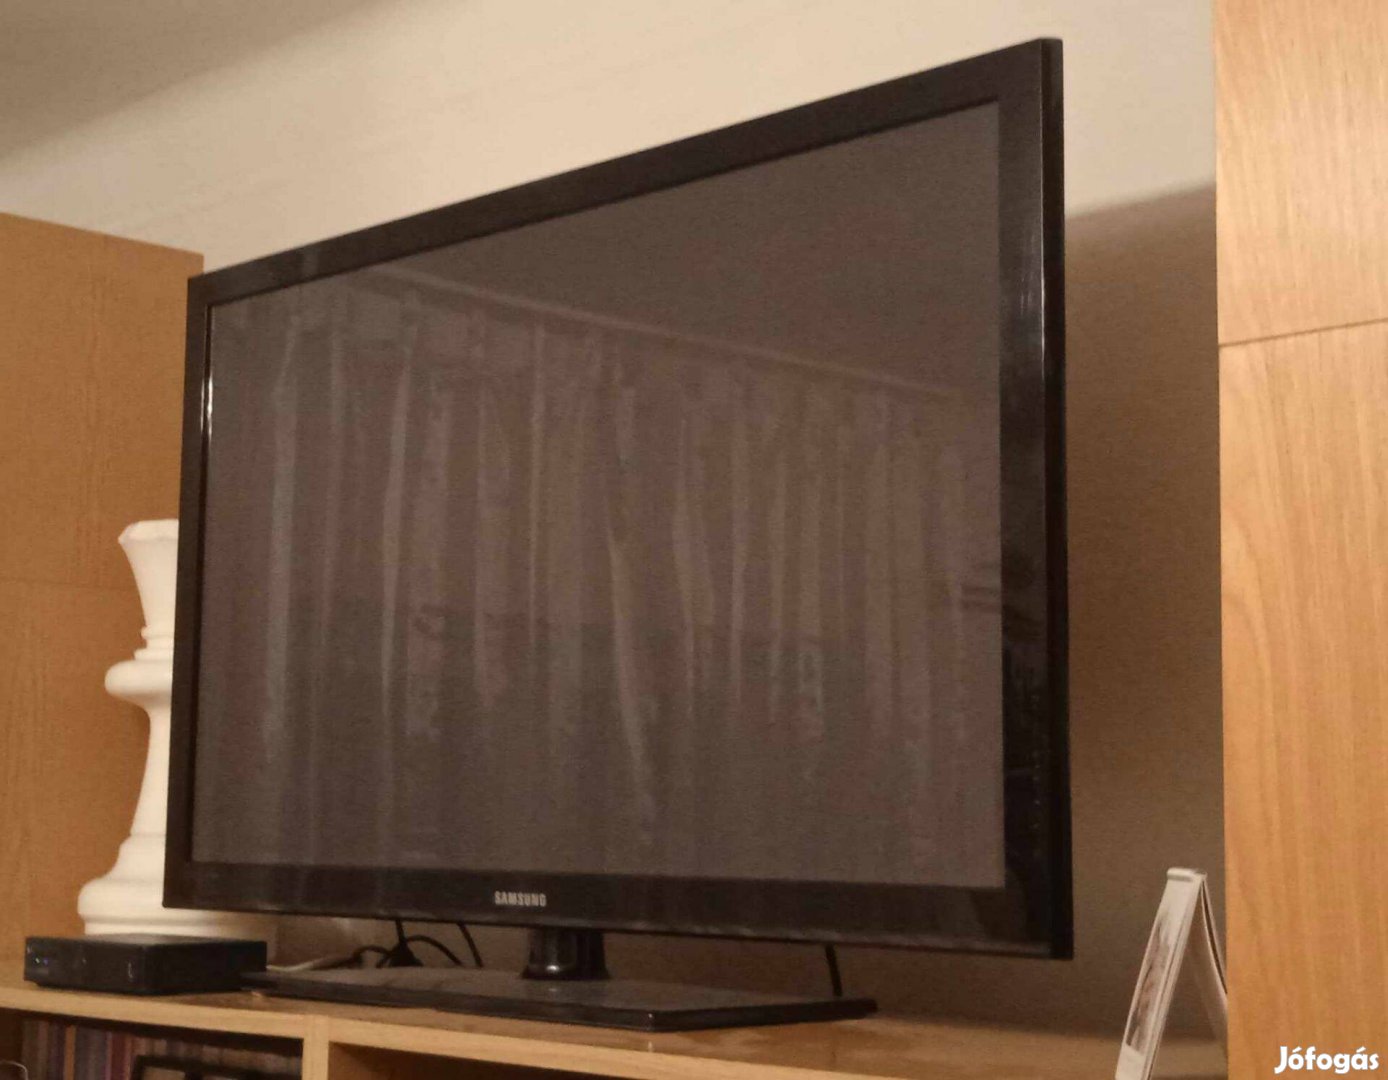 Samsung tv (2010-es) 123 cm képátló